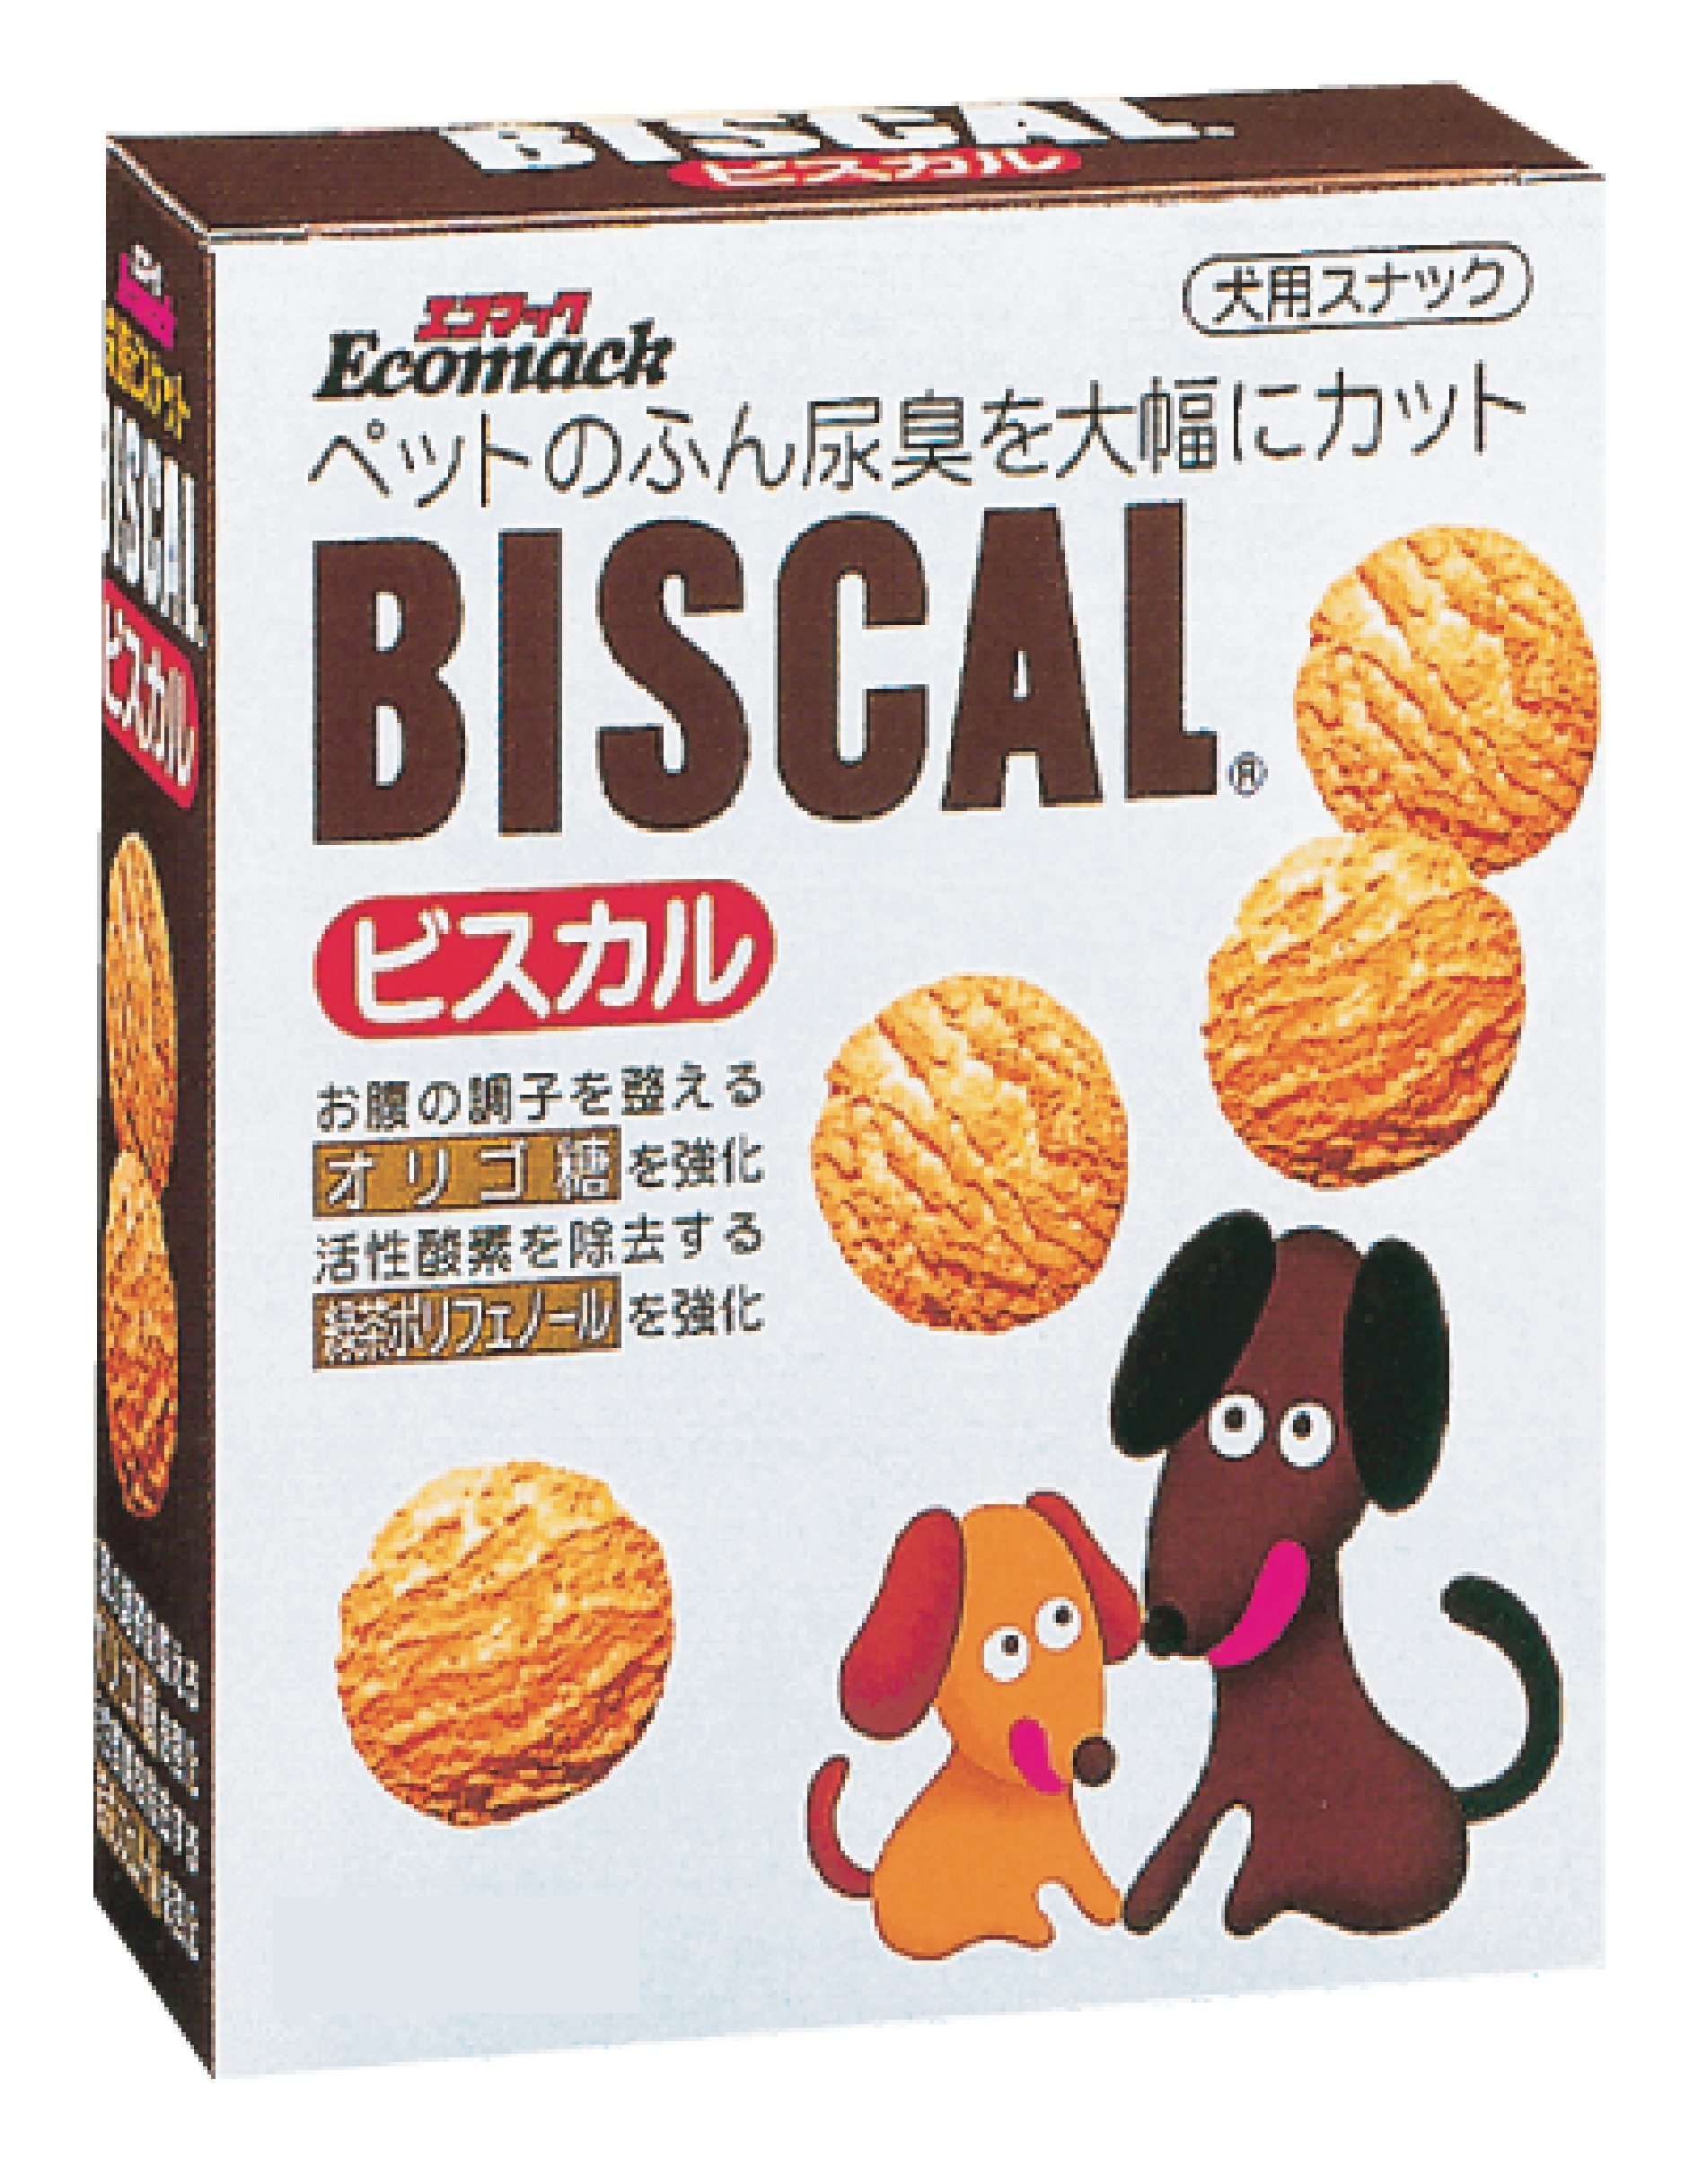 消臭餅乾900g 01138
BISCAL dog cookie-900g